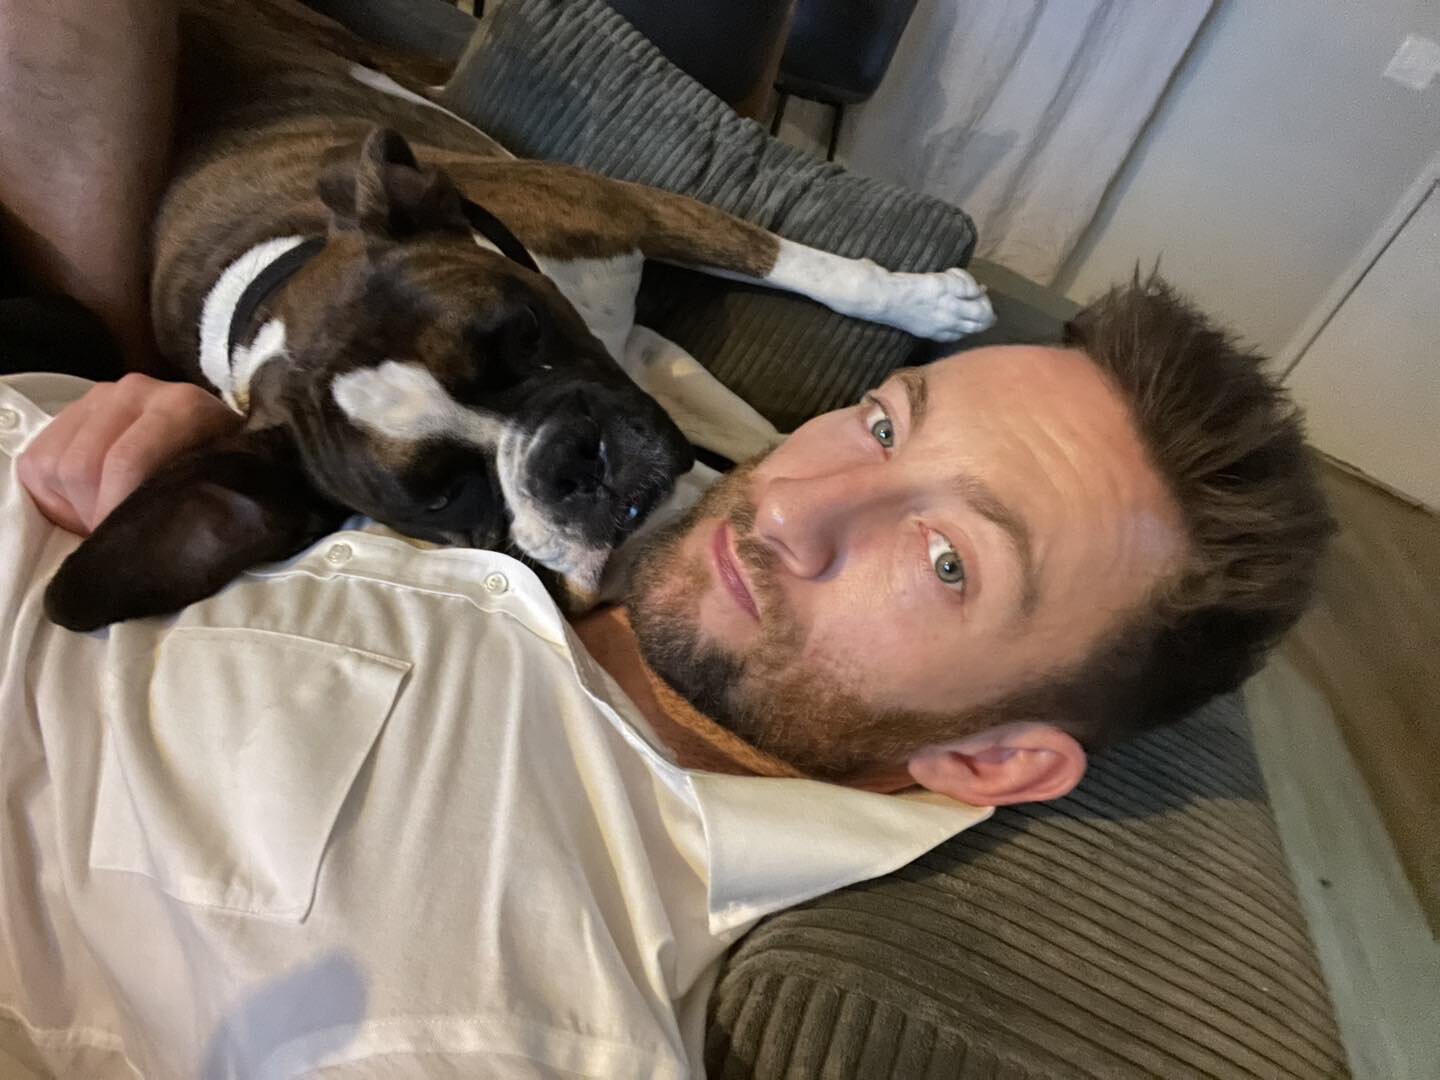 Cuddling with this handsome lad. #diego #dogsofinstagram #boxersofinstagram #dogdad